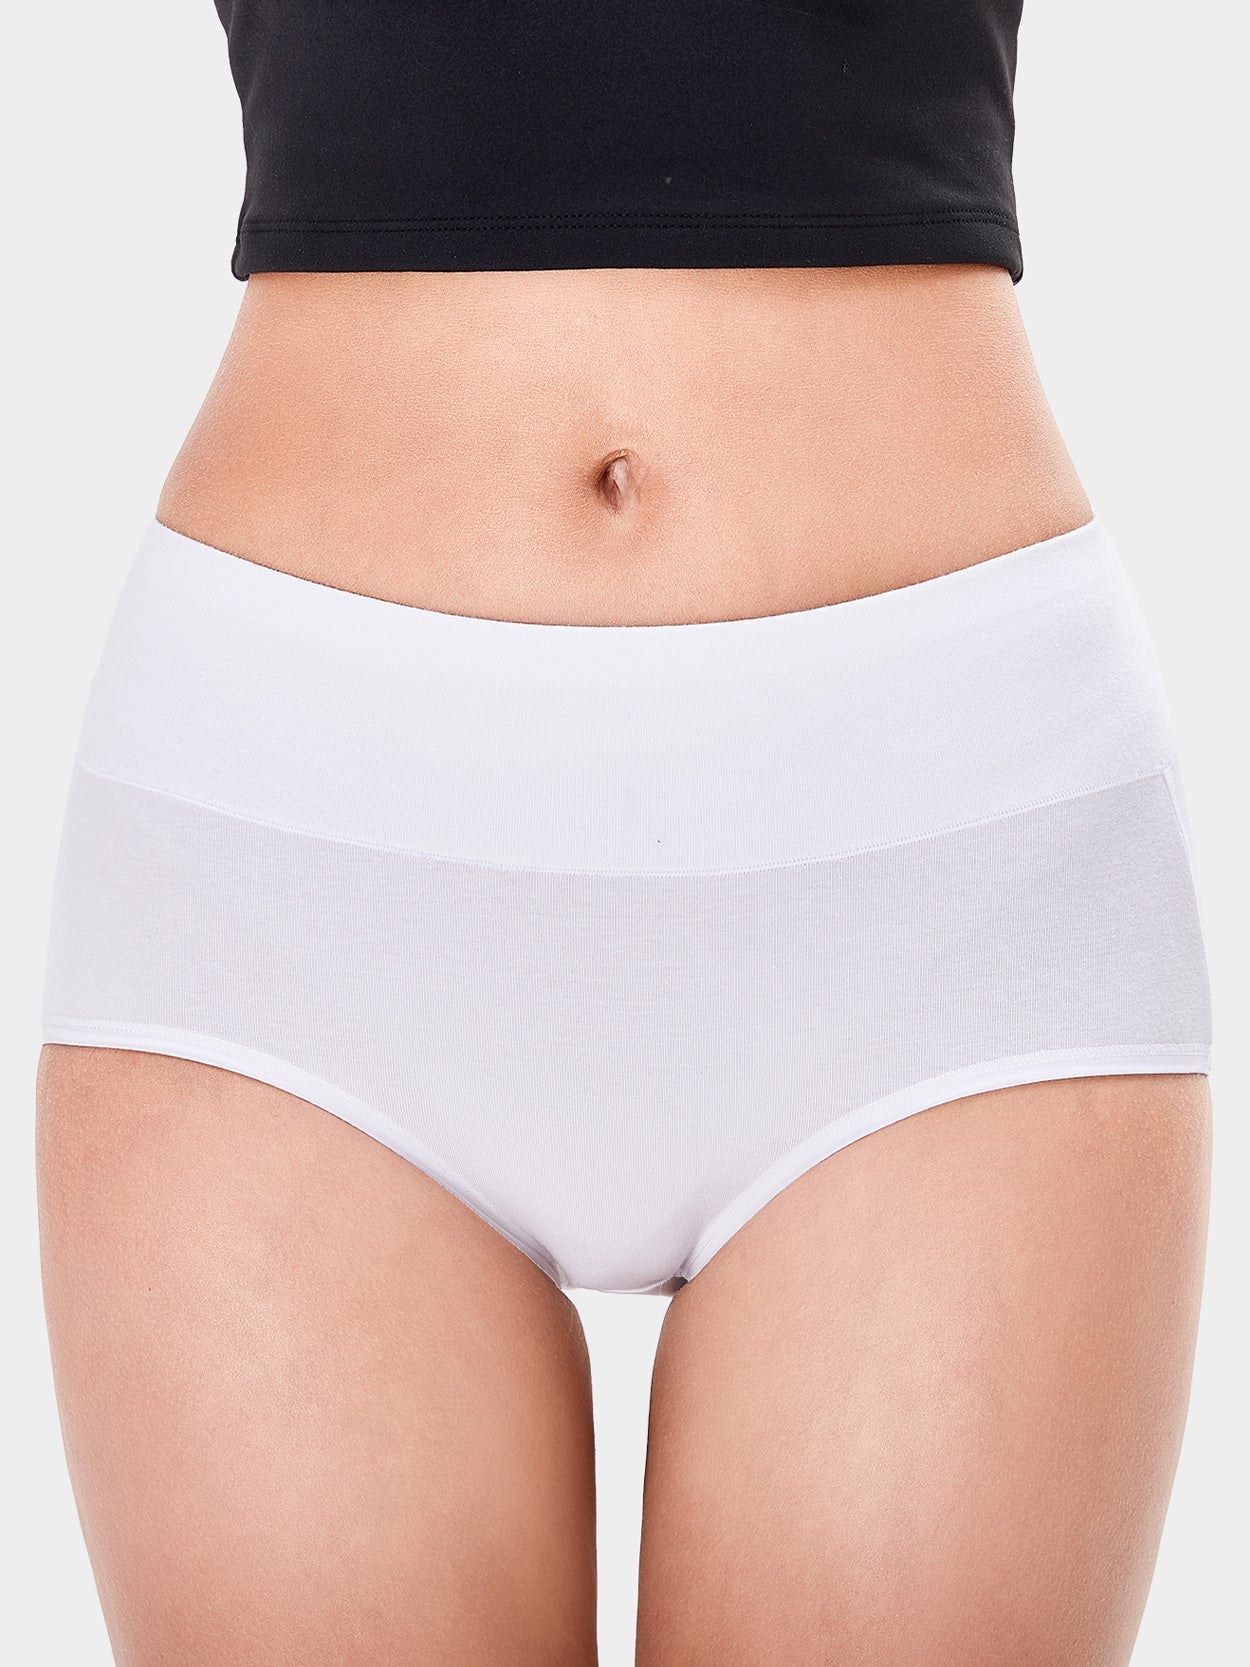 Soft Cotton High-Cut Briefs Breathable Panties White 3 PCS